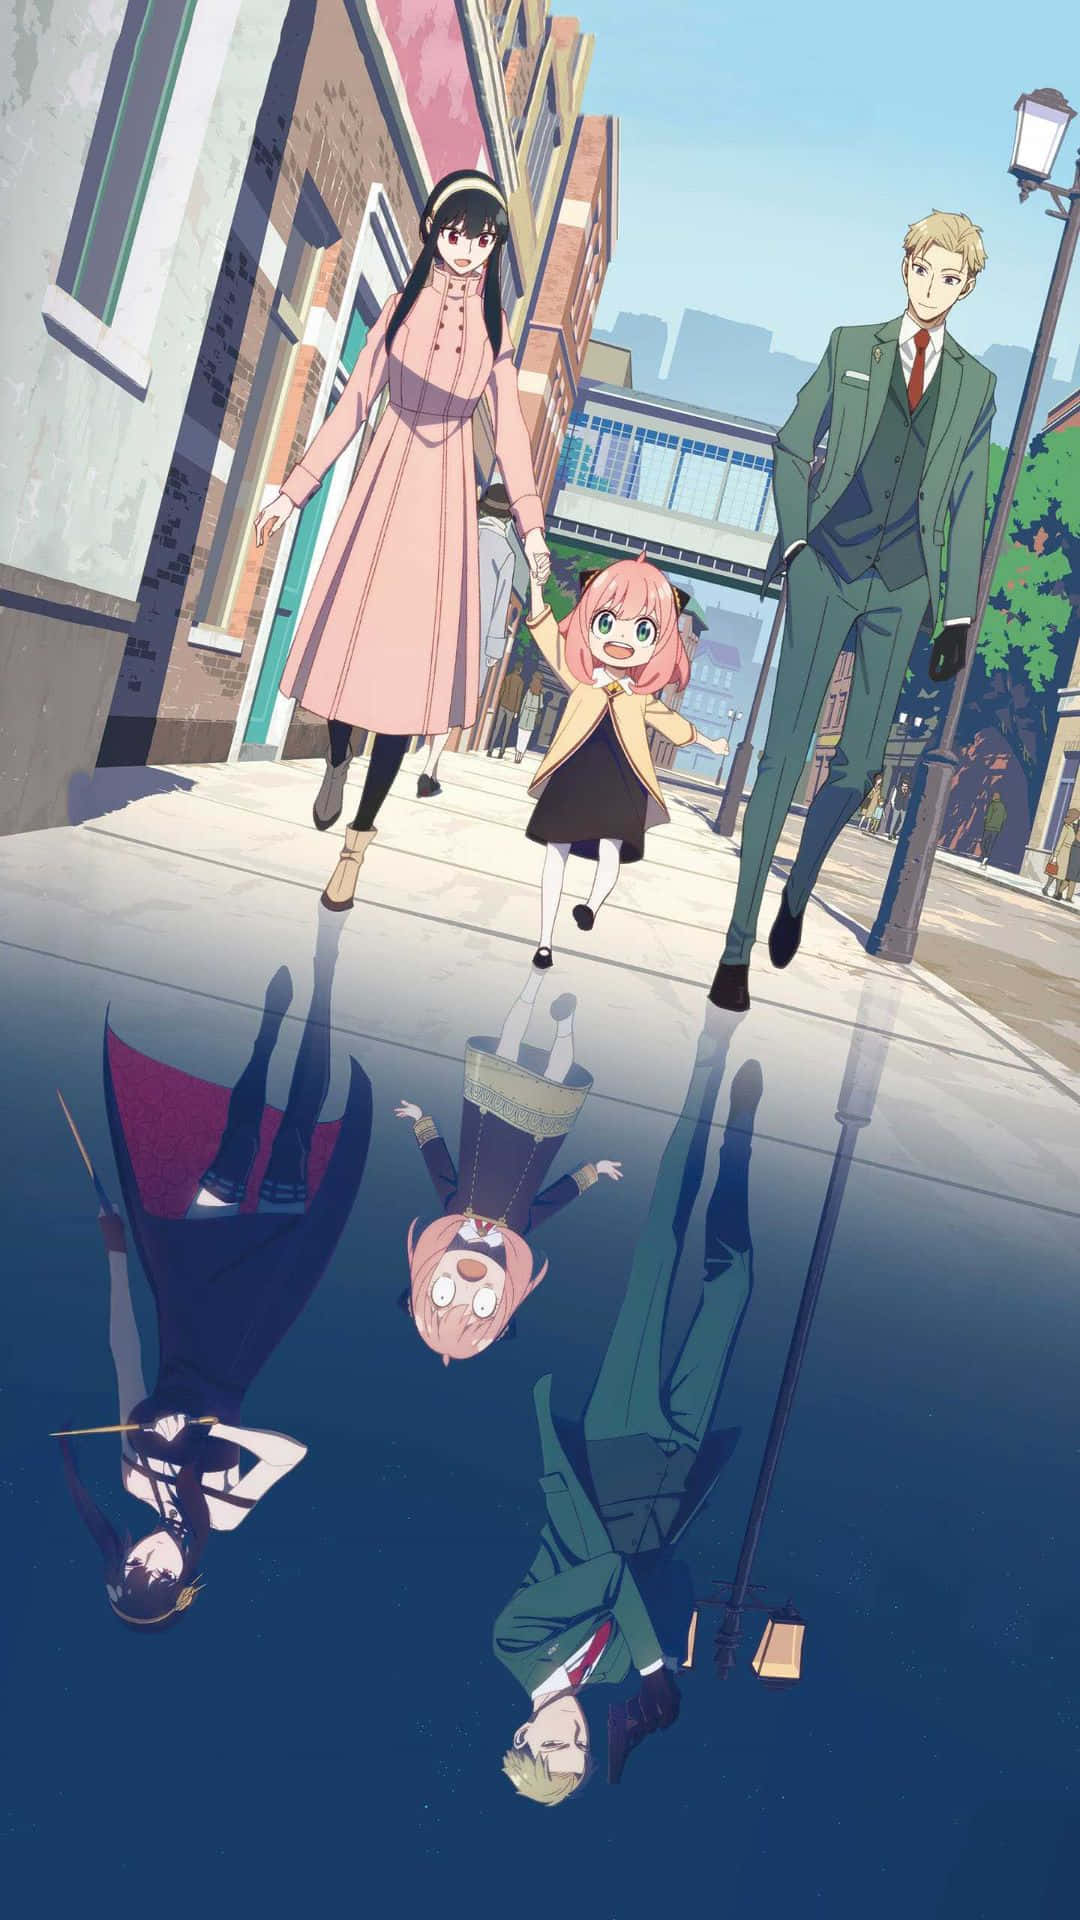 En gruppe af mennesker går ned ad gaden i en anime-stil. Wallpaper